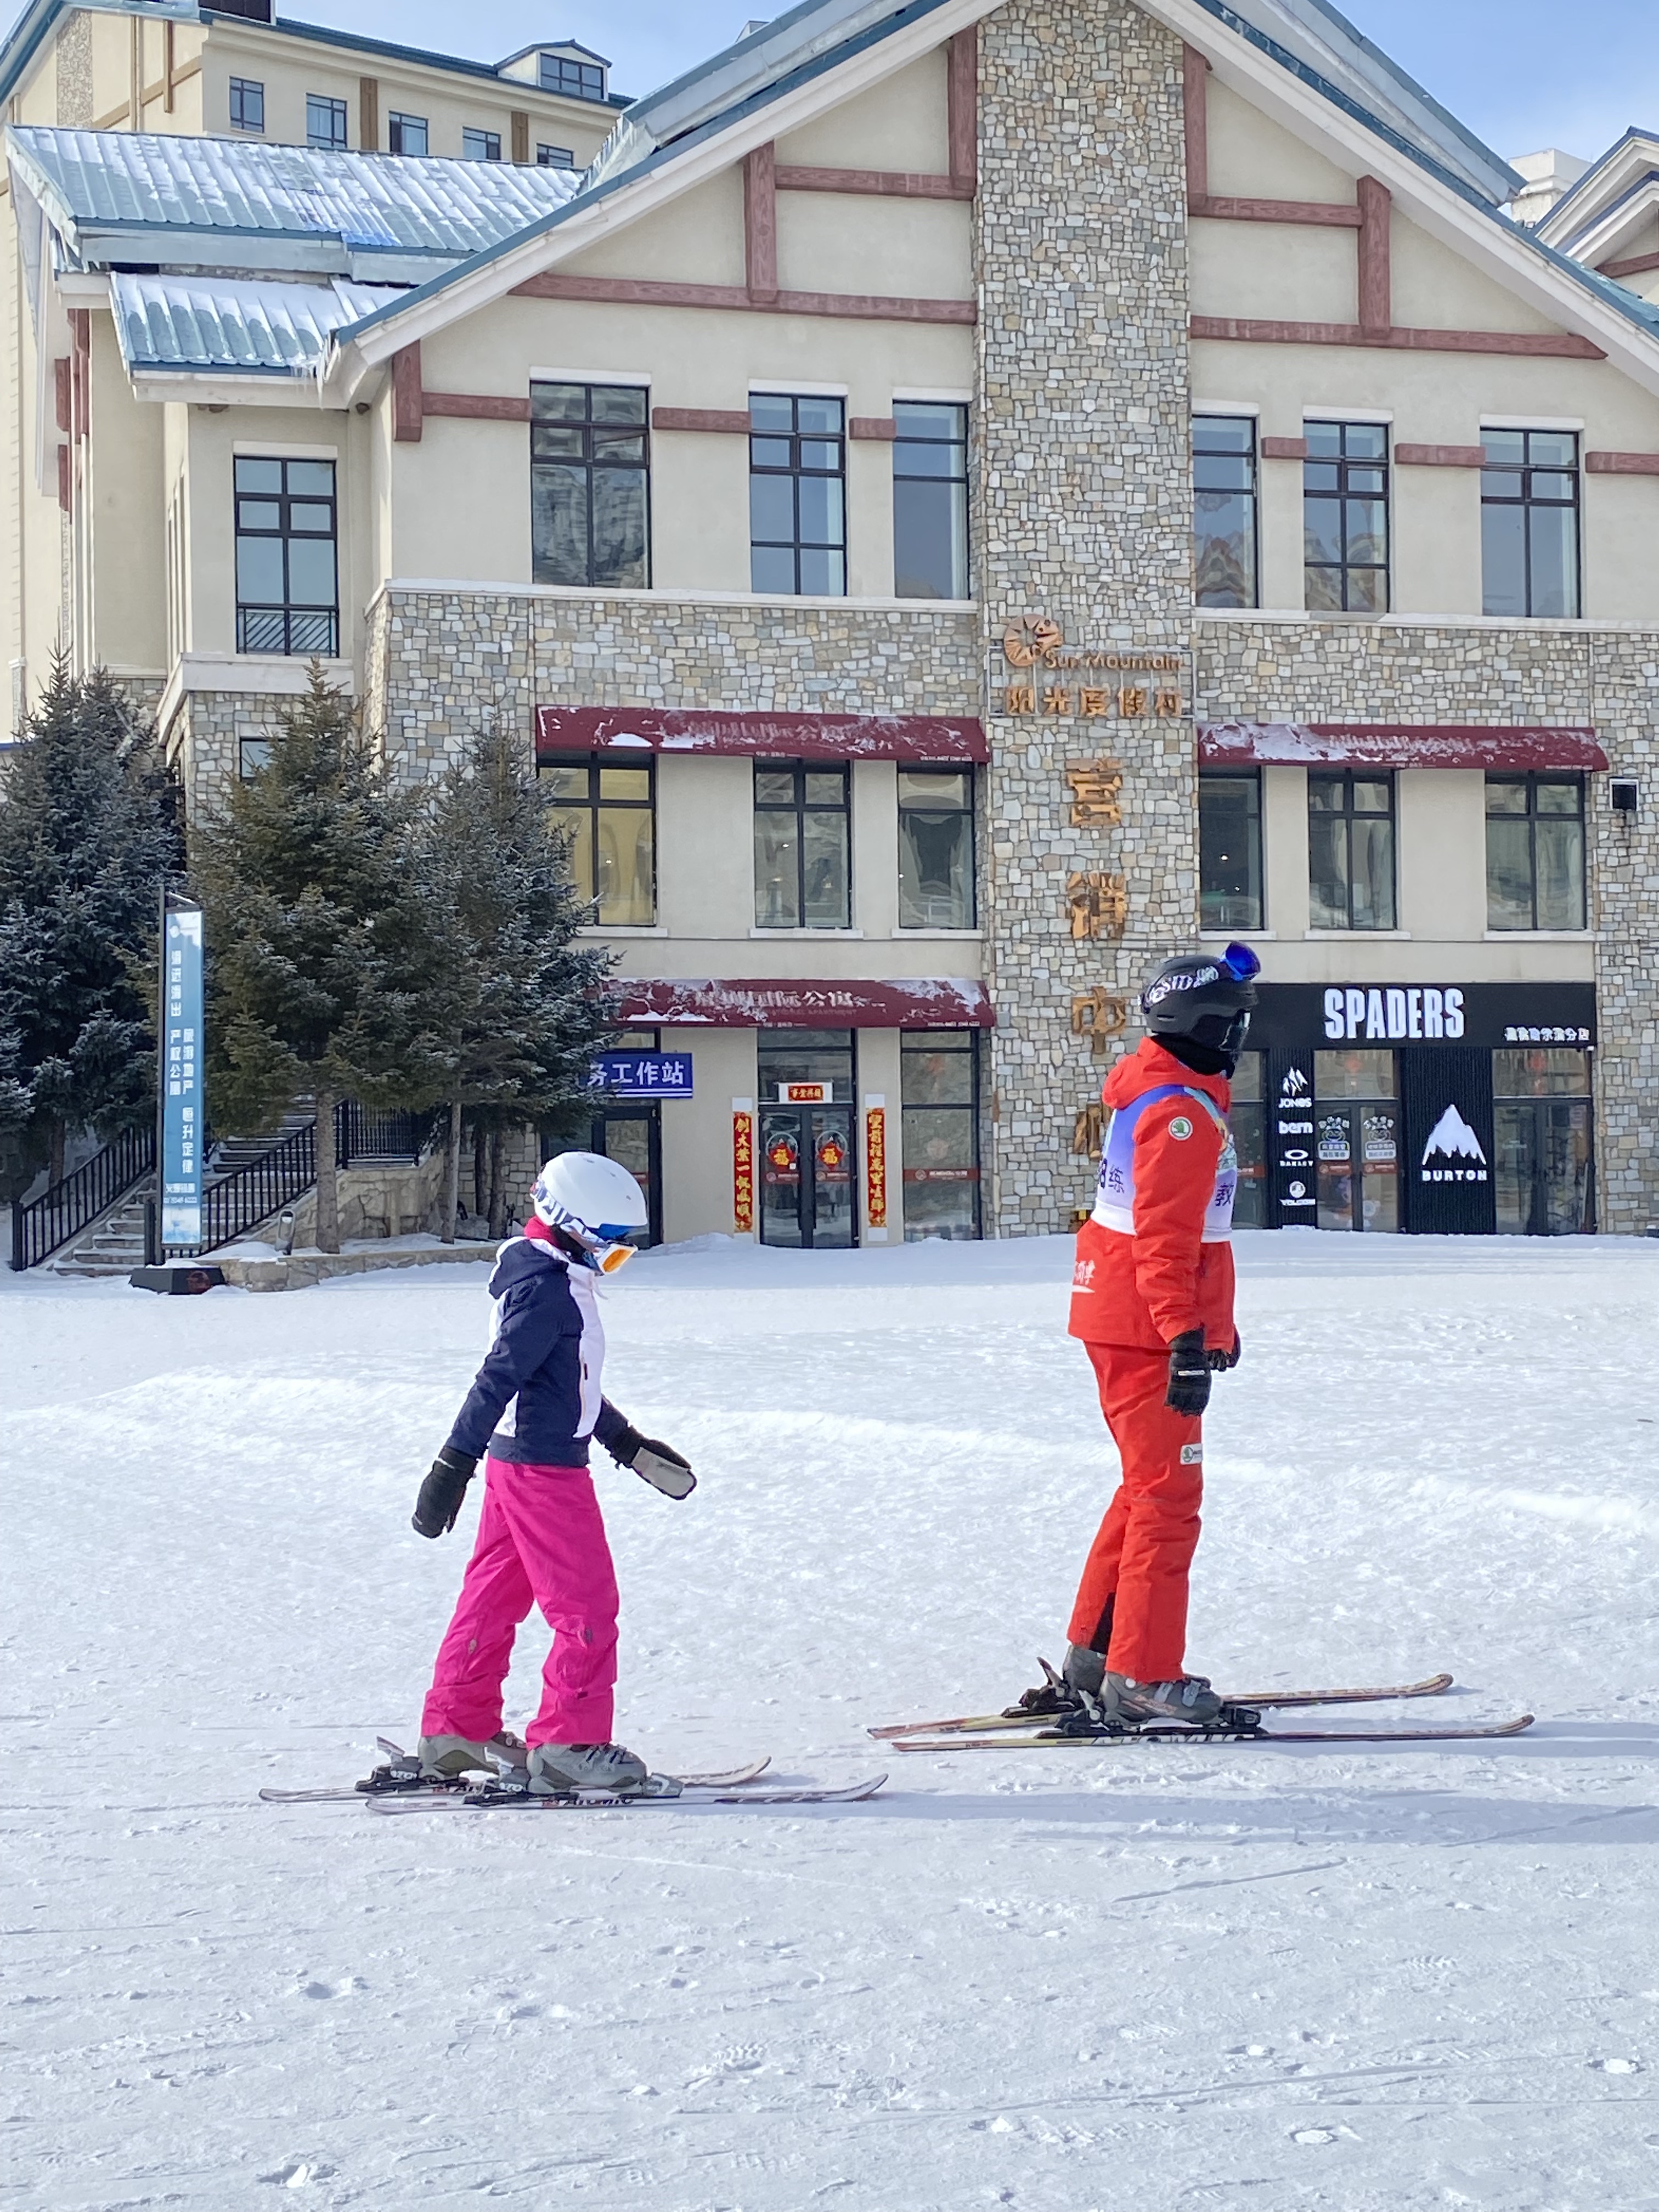 冰雪游成春节新宠 滑雪场200个教练都不够用